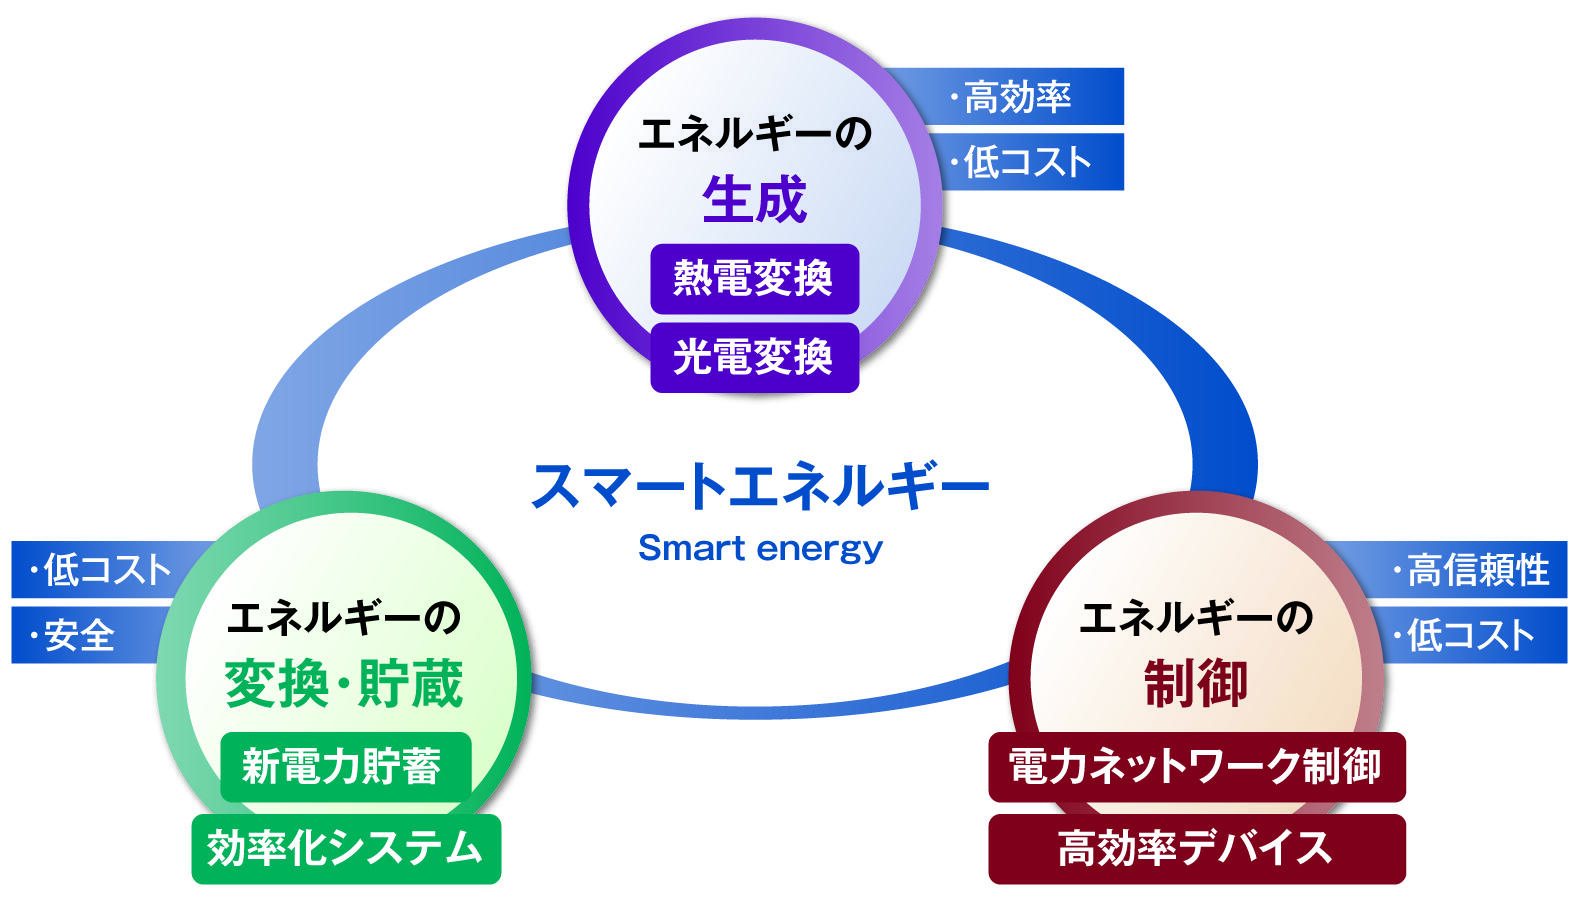 スマートエネルギー概念図